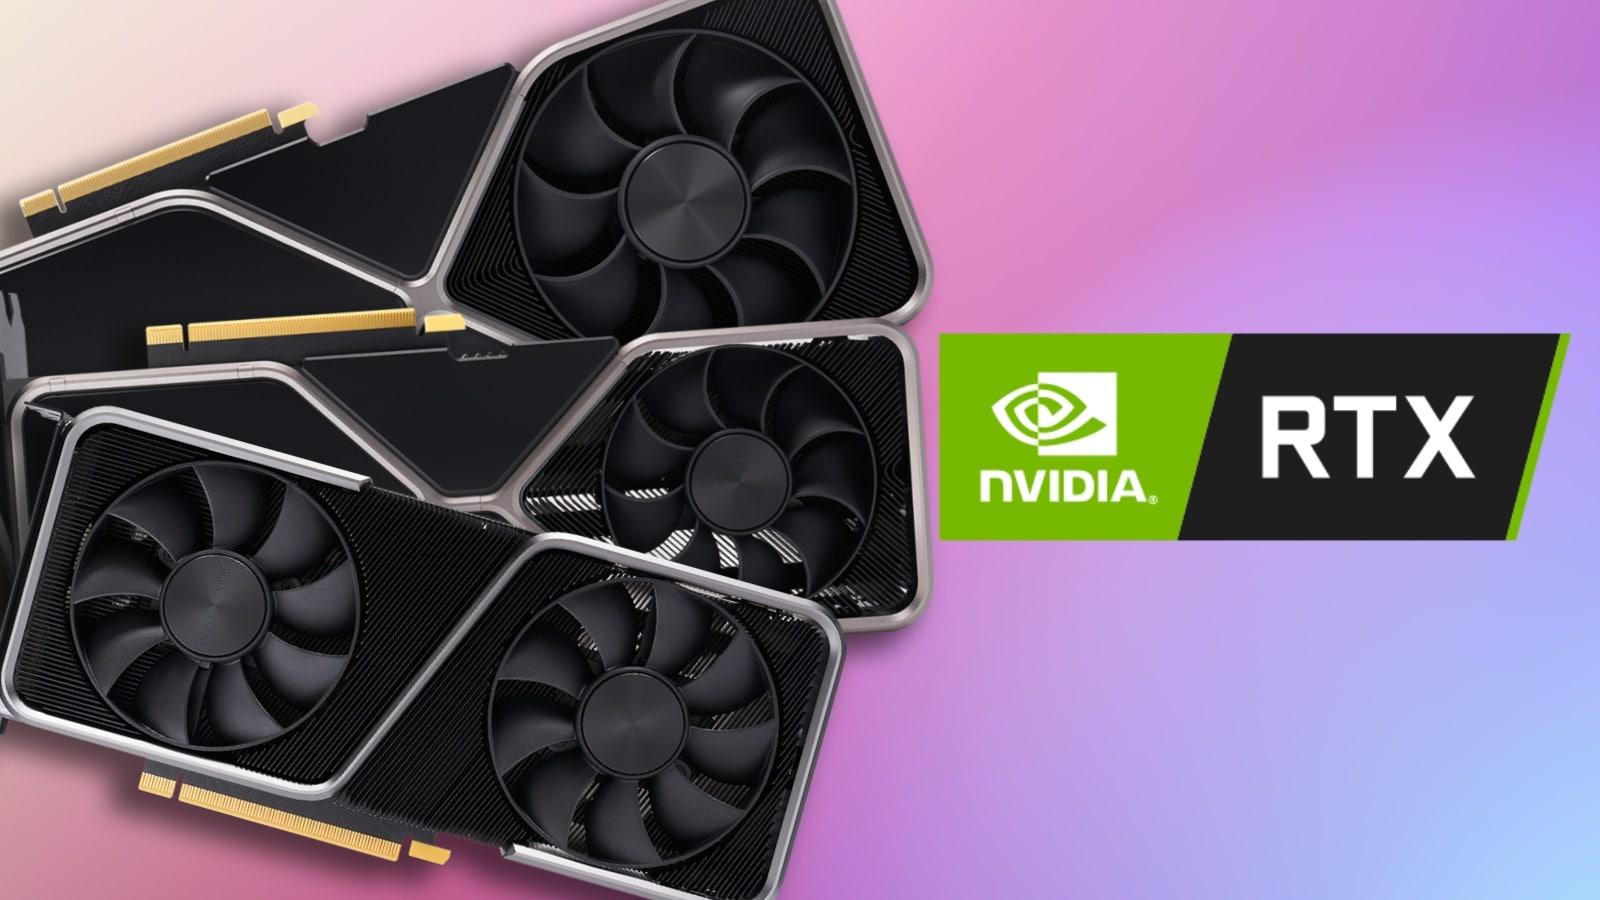 NVIDIA GeForce RTX 40 SUPER GPU Prices Allegedly Leak Out: 4080 SUPER $999,  4070 Ti SUPER $799, 4070 SUPER $599